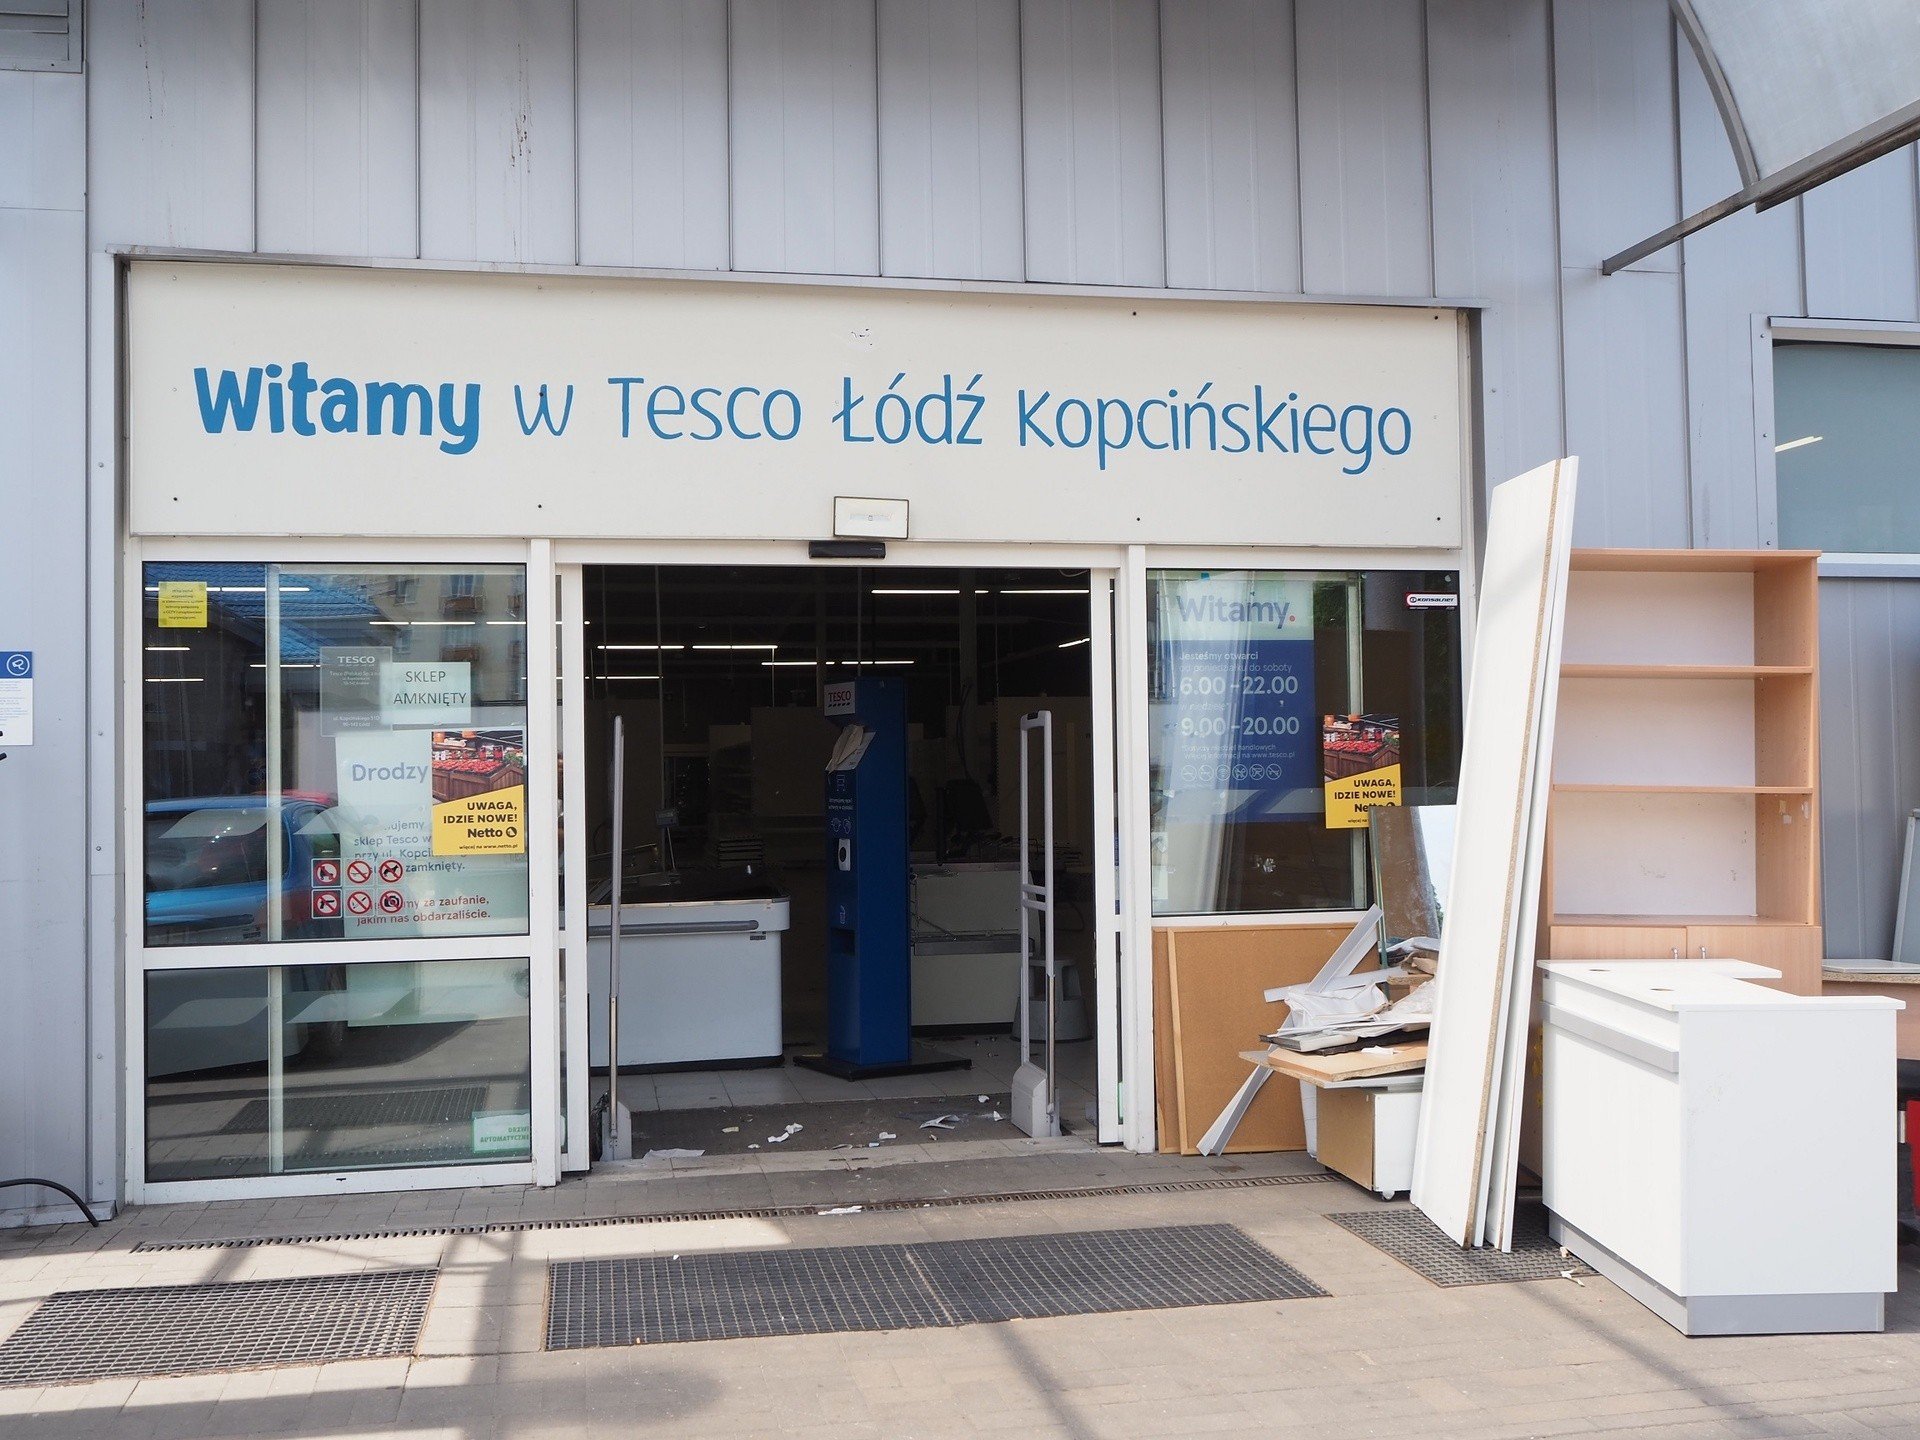 Zamykają się dwa kolejne sklepy Tesco. Do kiedy można robić zakupy? Kiedy  zostaną otwarte jako Netto? | Dziennik Łódzki